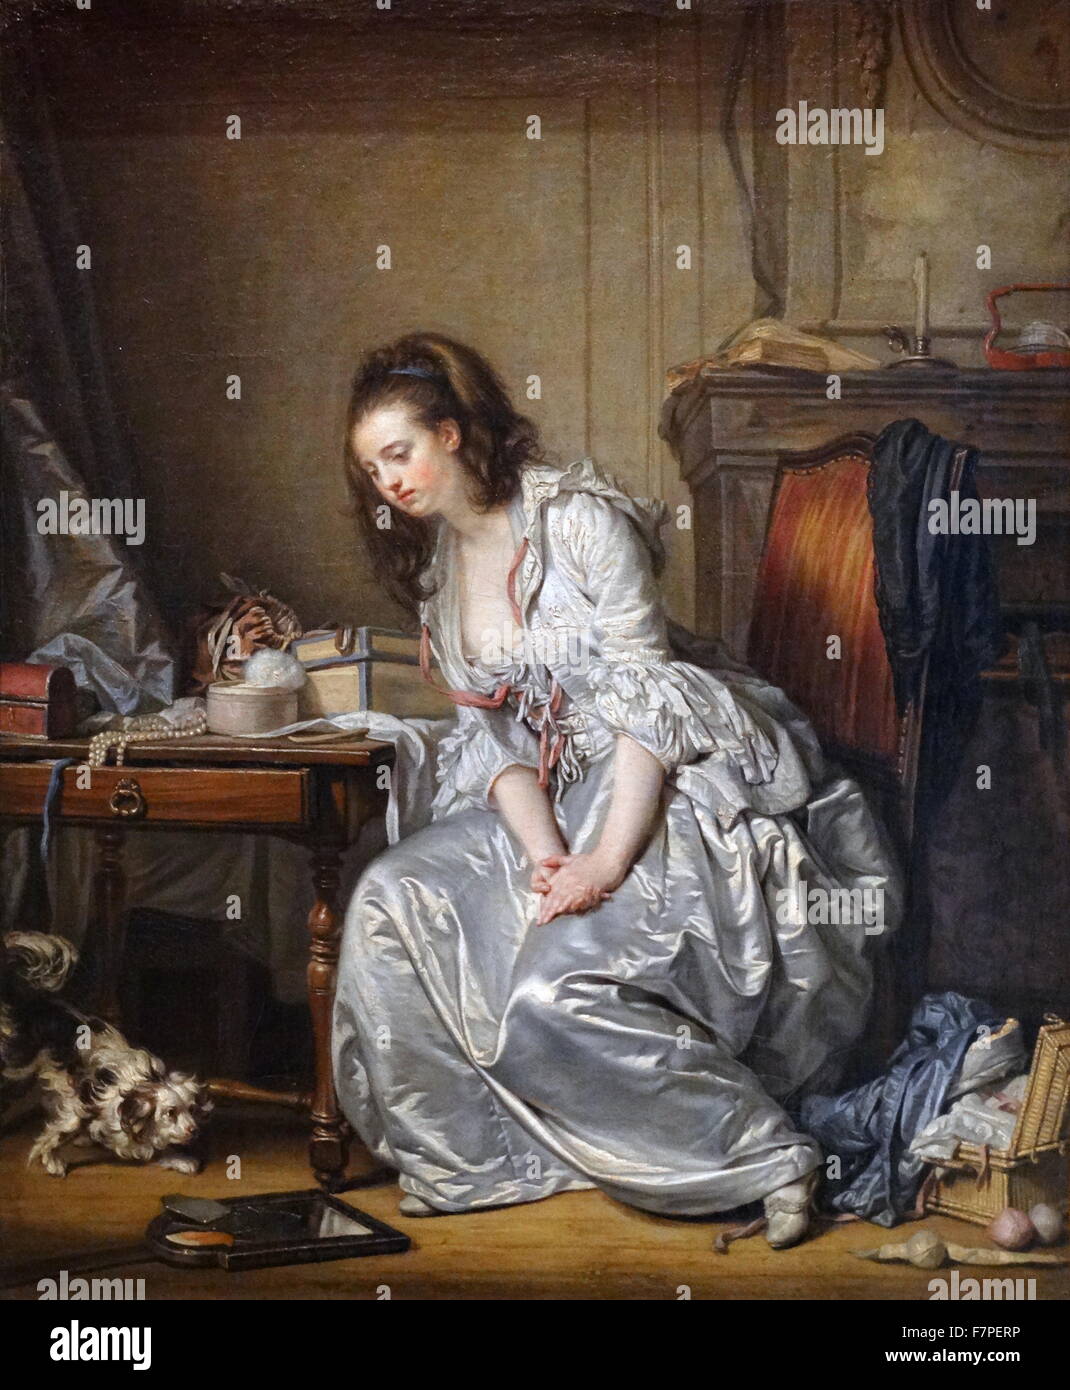 Gemälde mit dem Titel "The Broken Mirror" vom französischen Maler Jean-Baptiste Greuze (1725-1805) von Porträts, Genreszenen und Historienmalerei. Vom 18. Jahrhundert Stockfoto